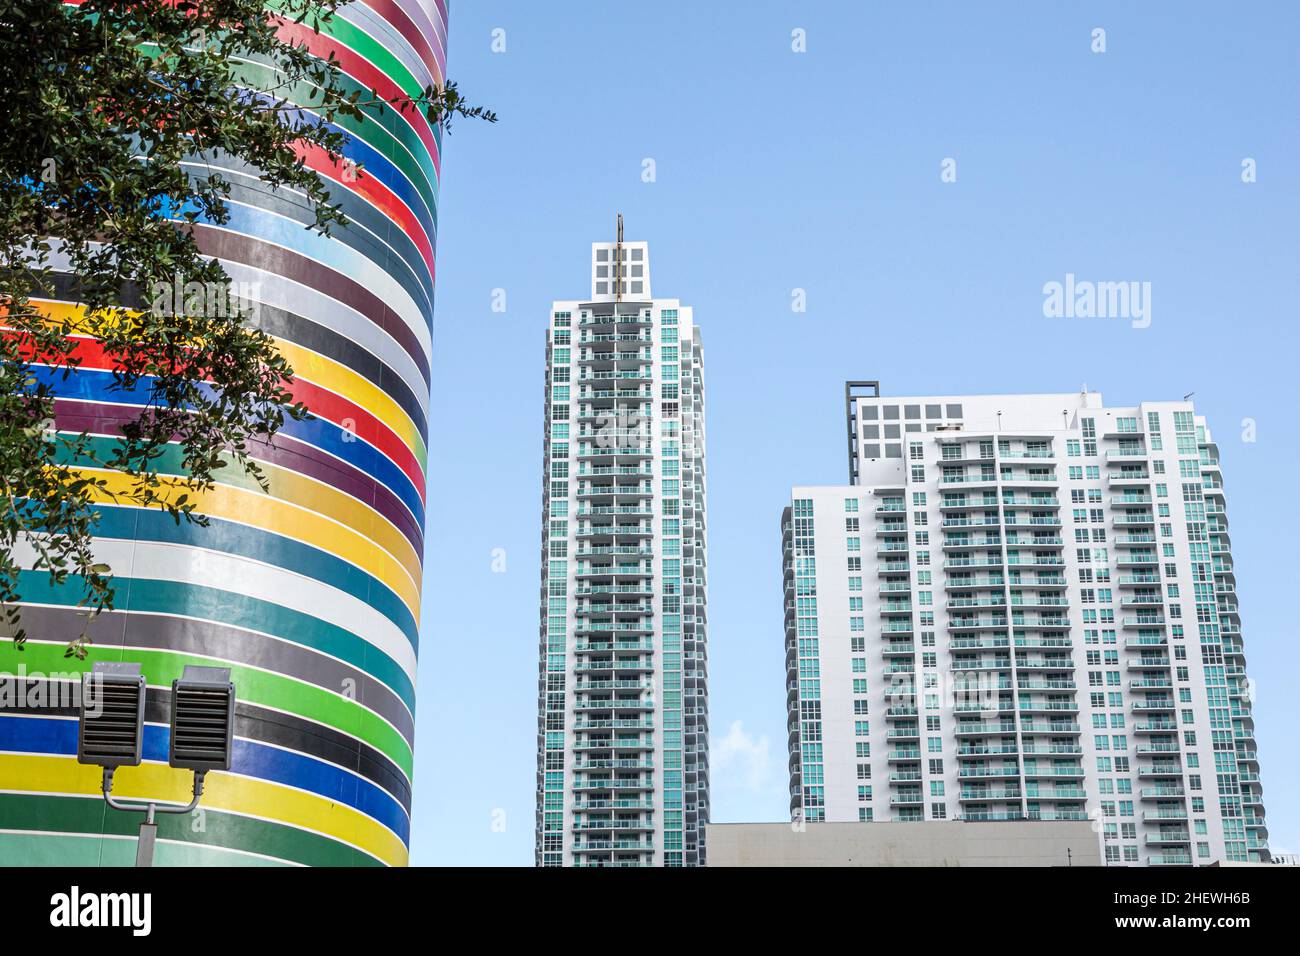 Miami Florida Brickell South Miami Avenue Fabian Burgos murale rayures colorées tours de haute tour immeubles condominium résidentiel Banque D'Images